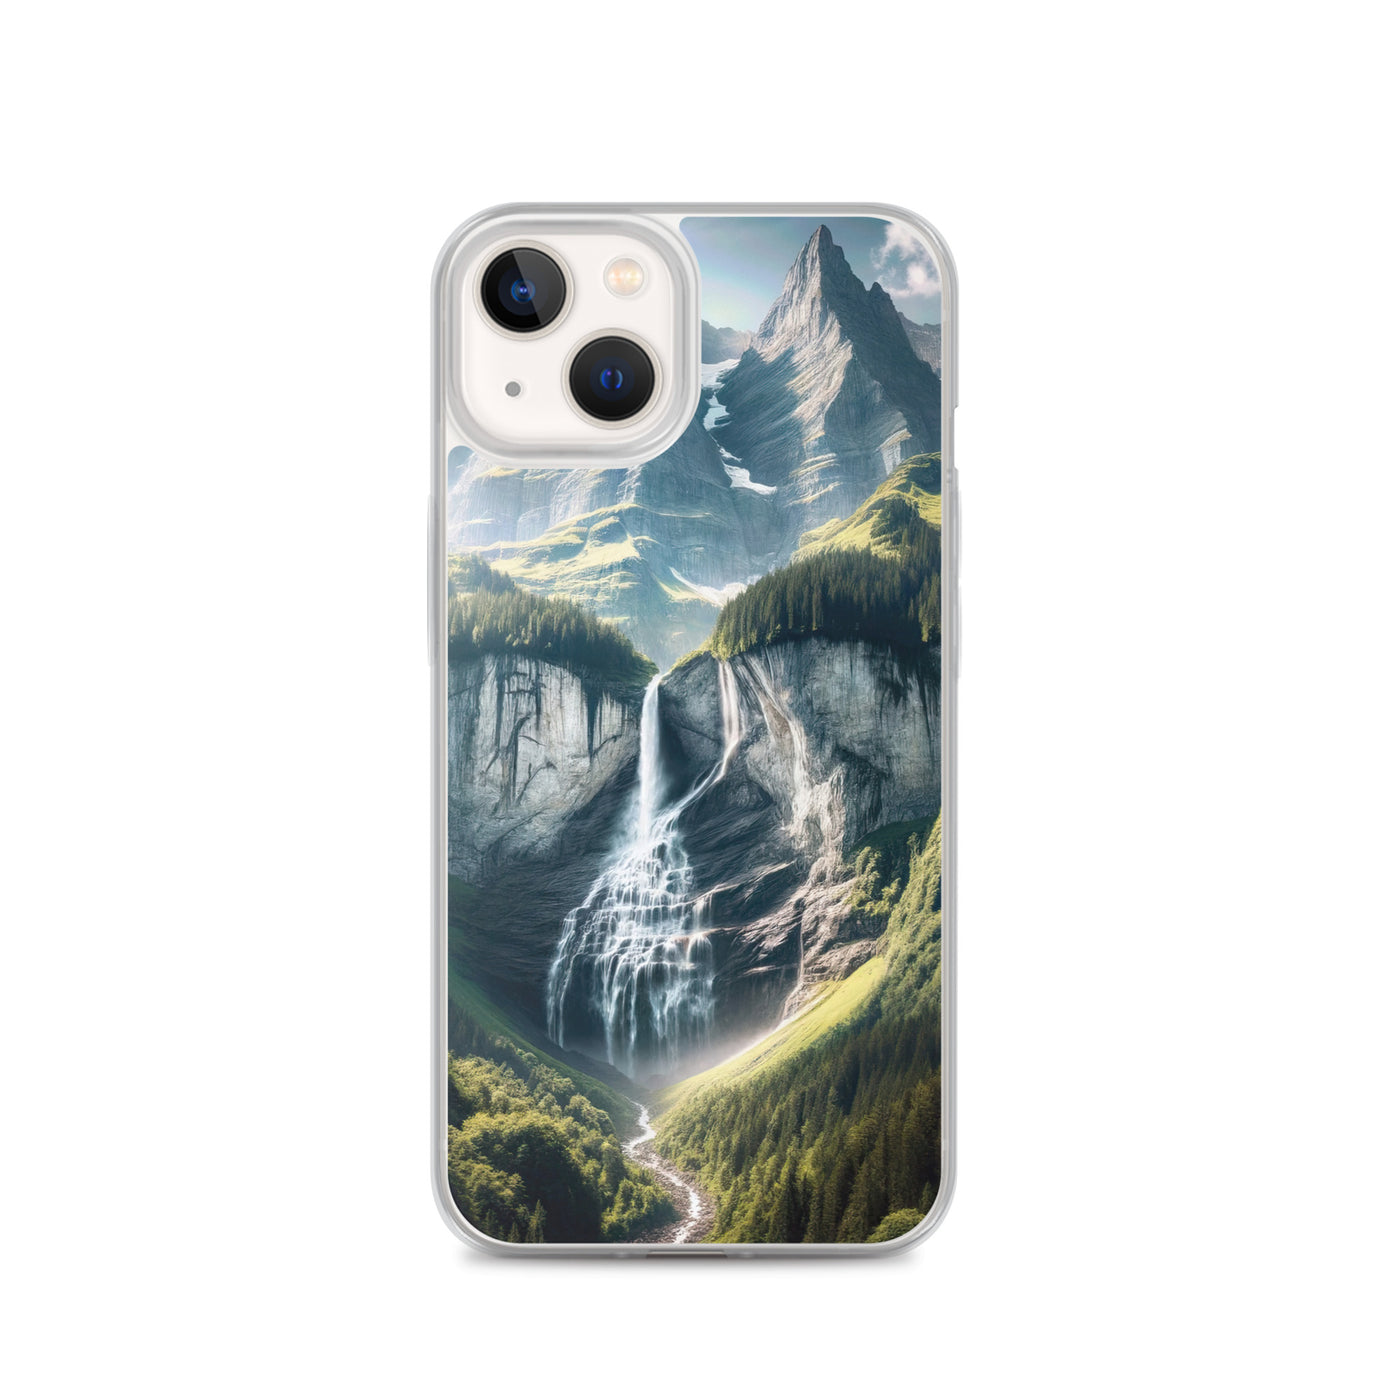 Foto der sommerlichen Alpen mit üppigen Gipfeln und Wasserfall - iPhone Schutzhülle (durchsichtig) berge xxx yyy zzz iPhone 13